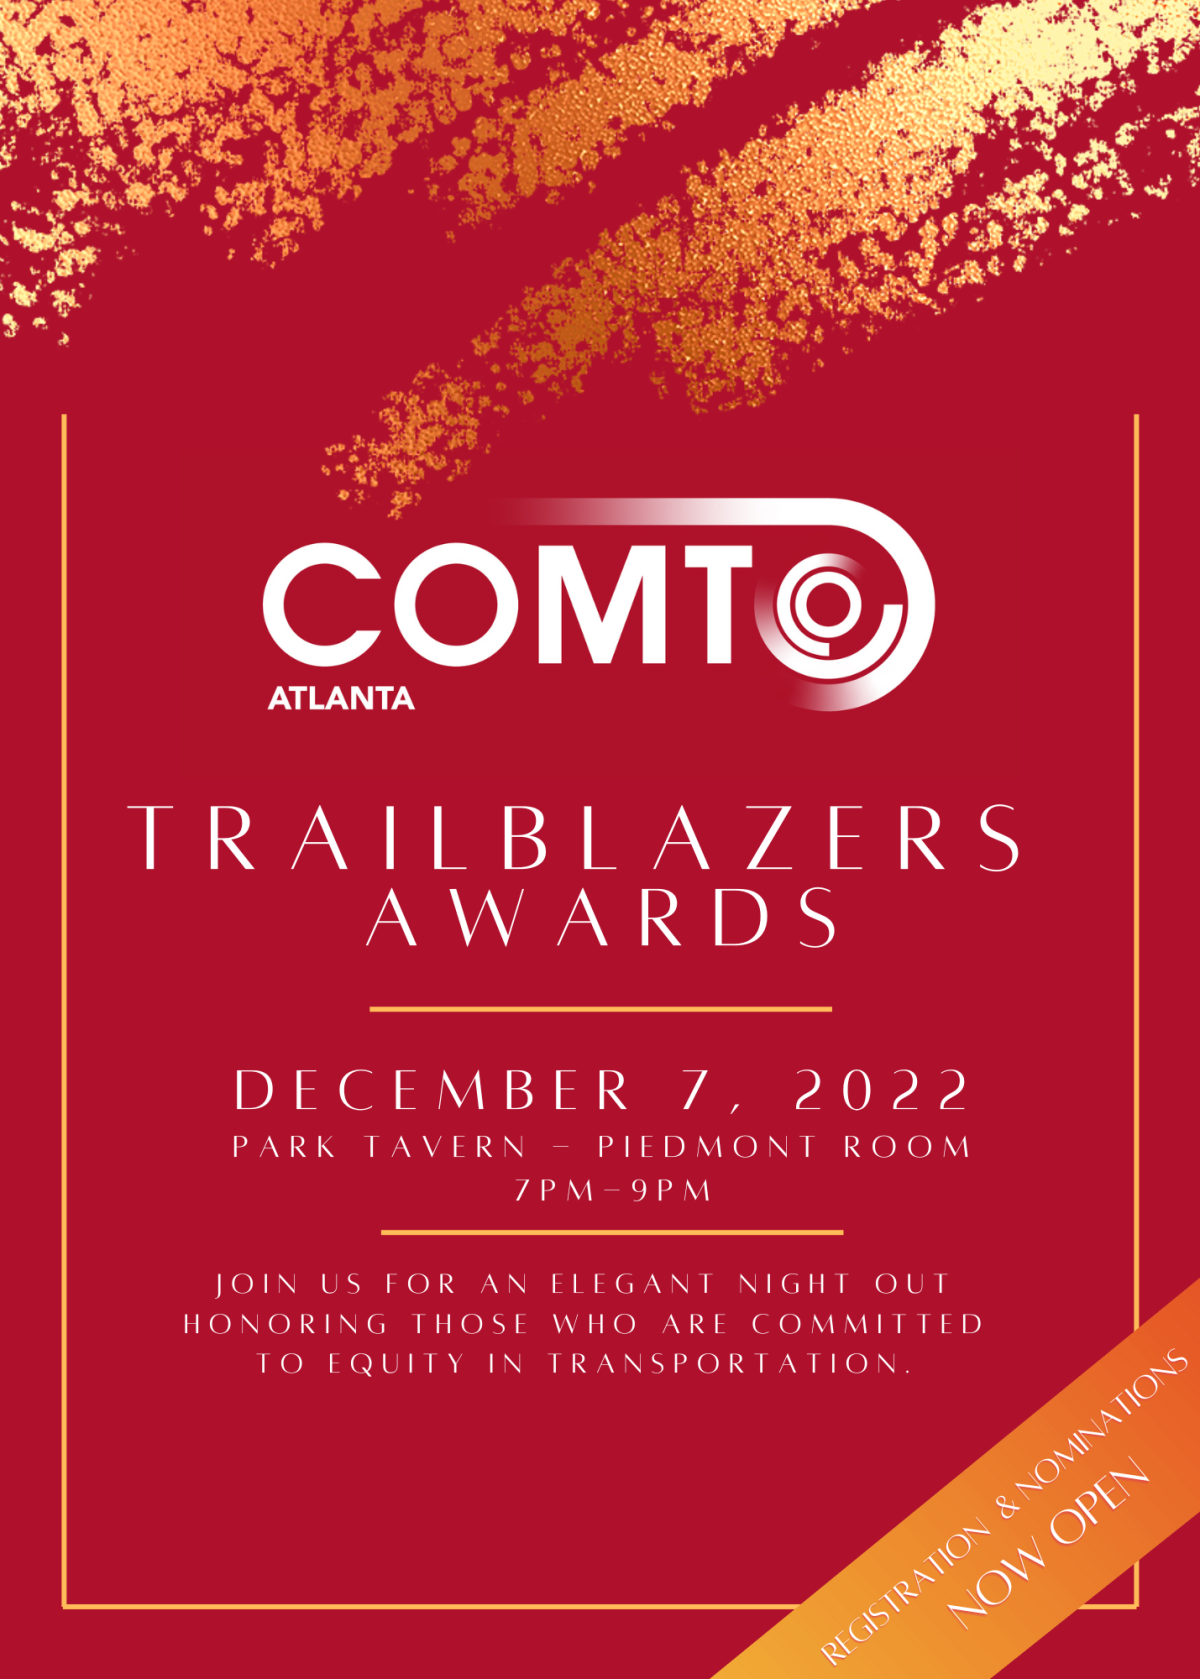 Invitation for COMTO Atlanta Trailblazers Awards